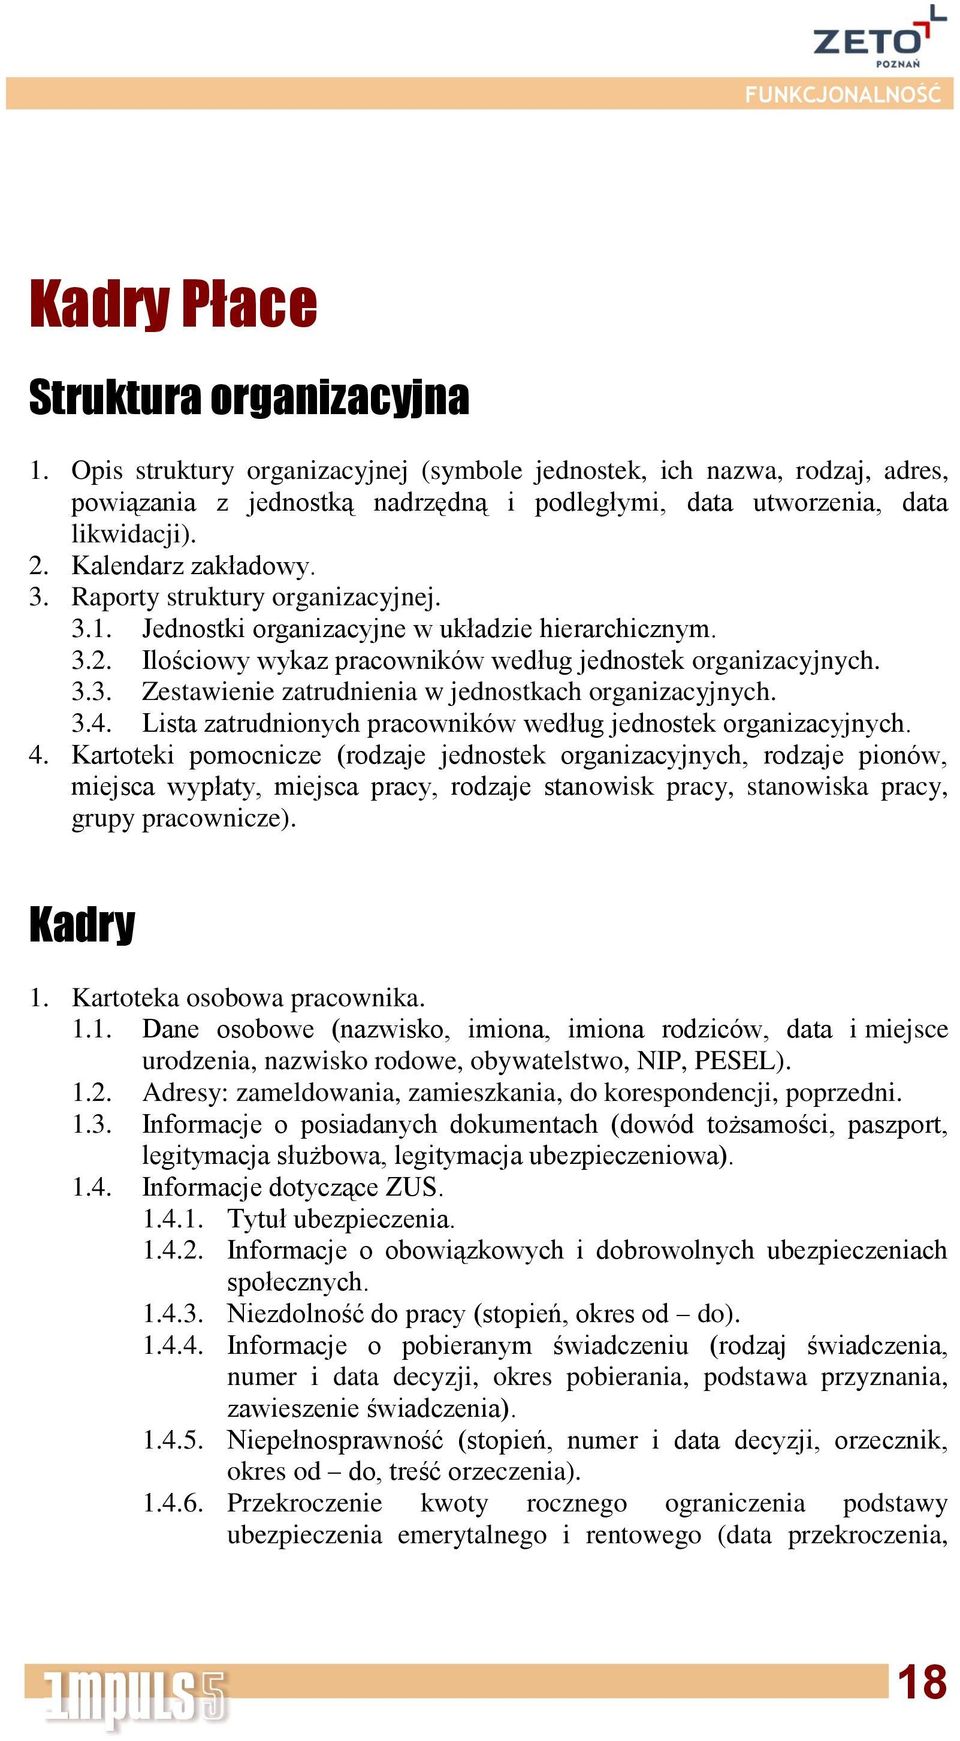 3.4. Lista zatrudnionych pracowników według jednostek organizacyjnych. 4.